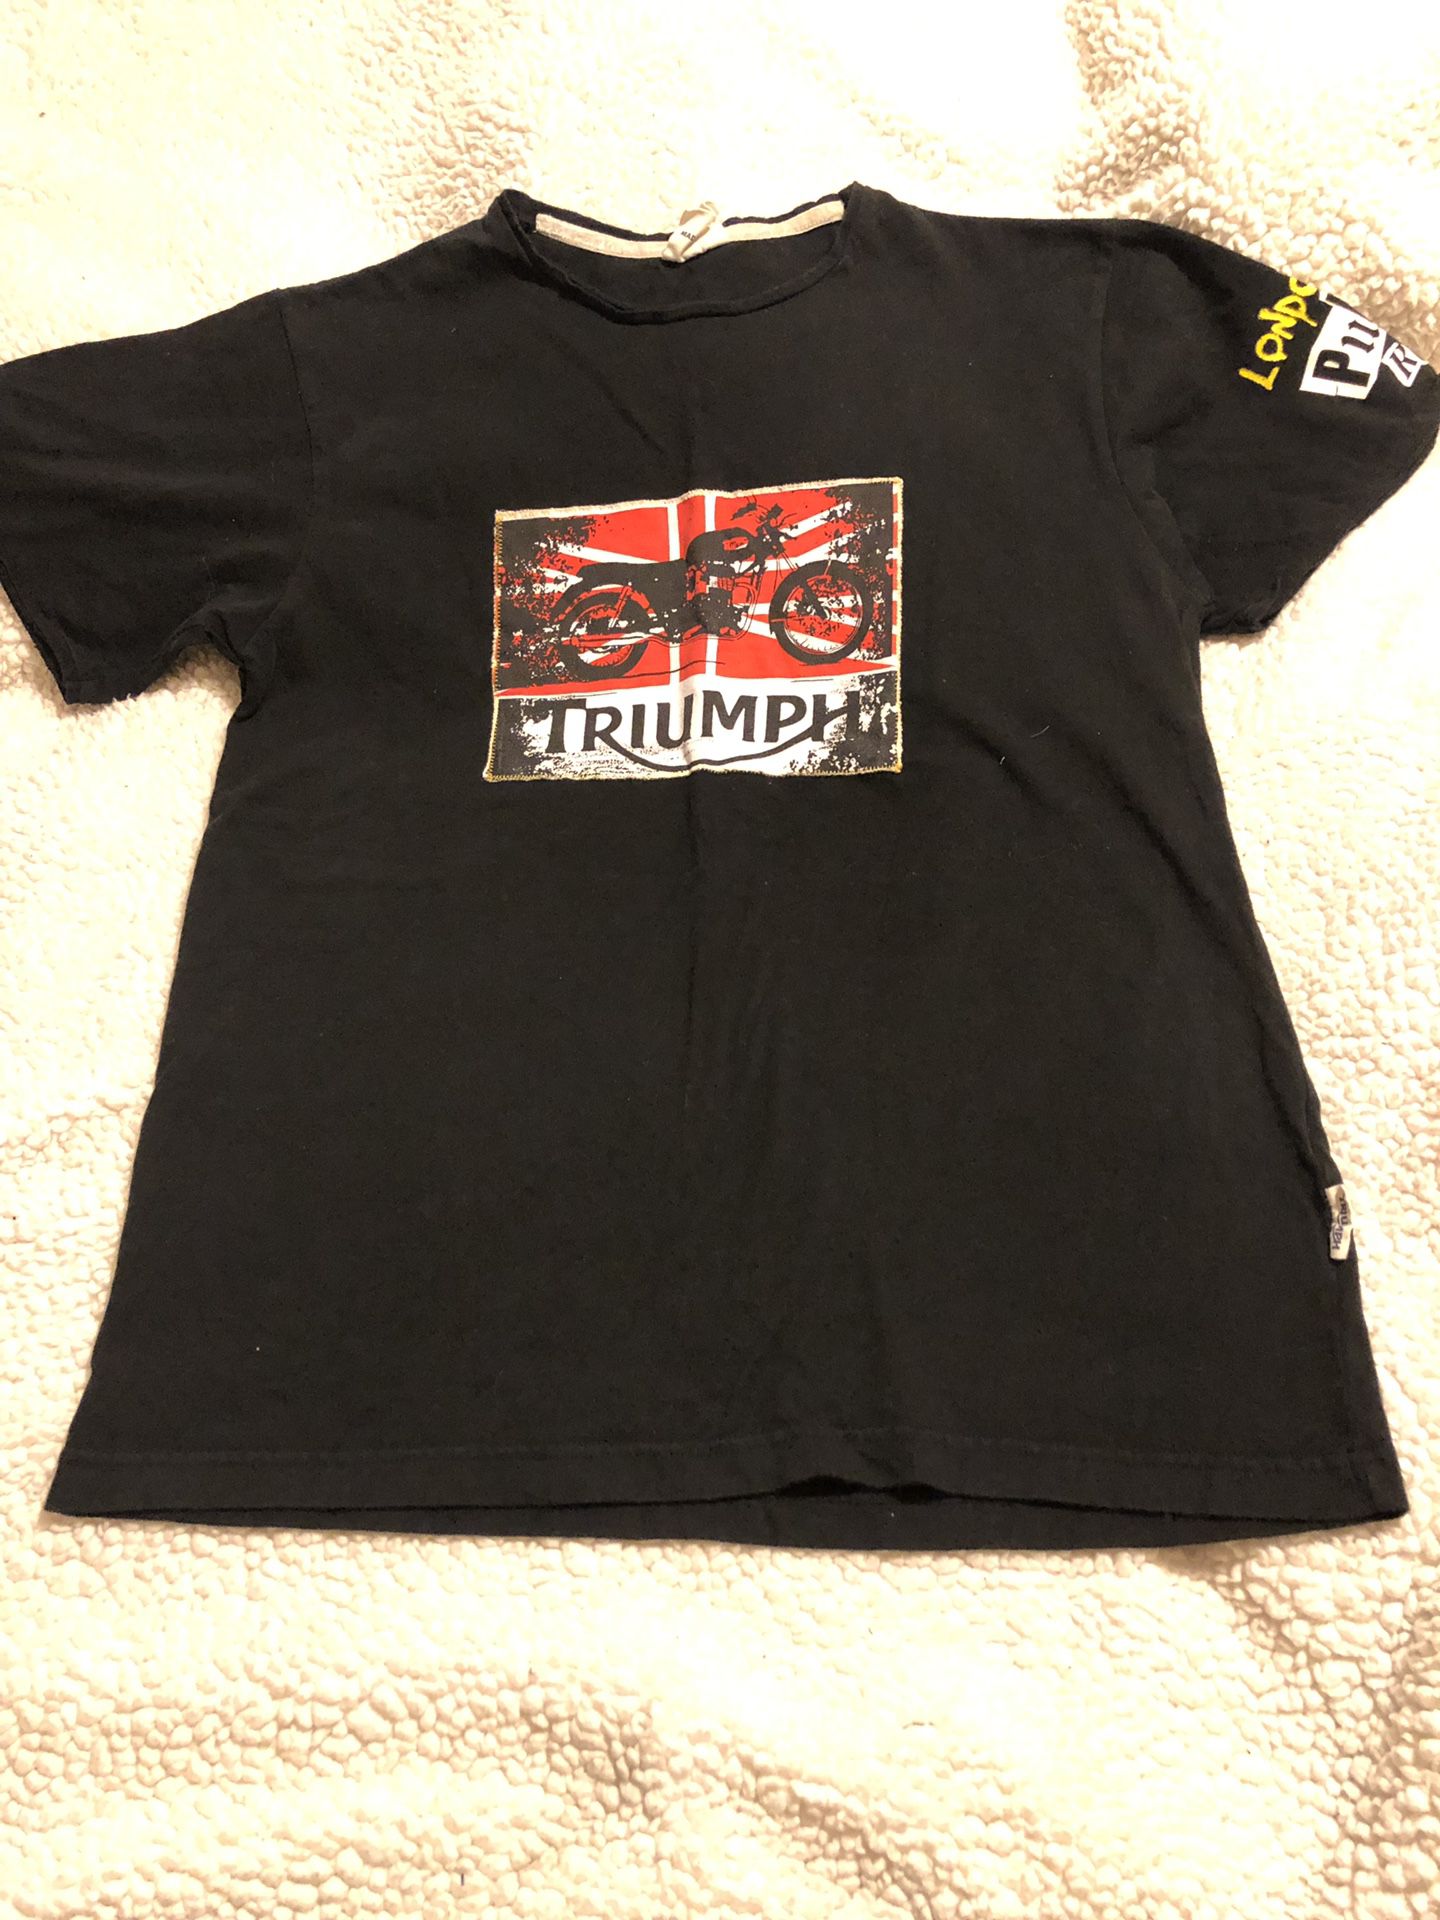 Triumph motorcycle club T-shirt size M, Men’s